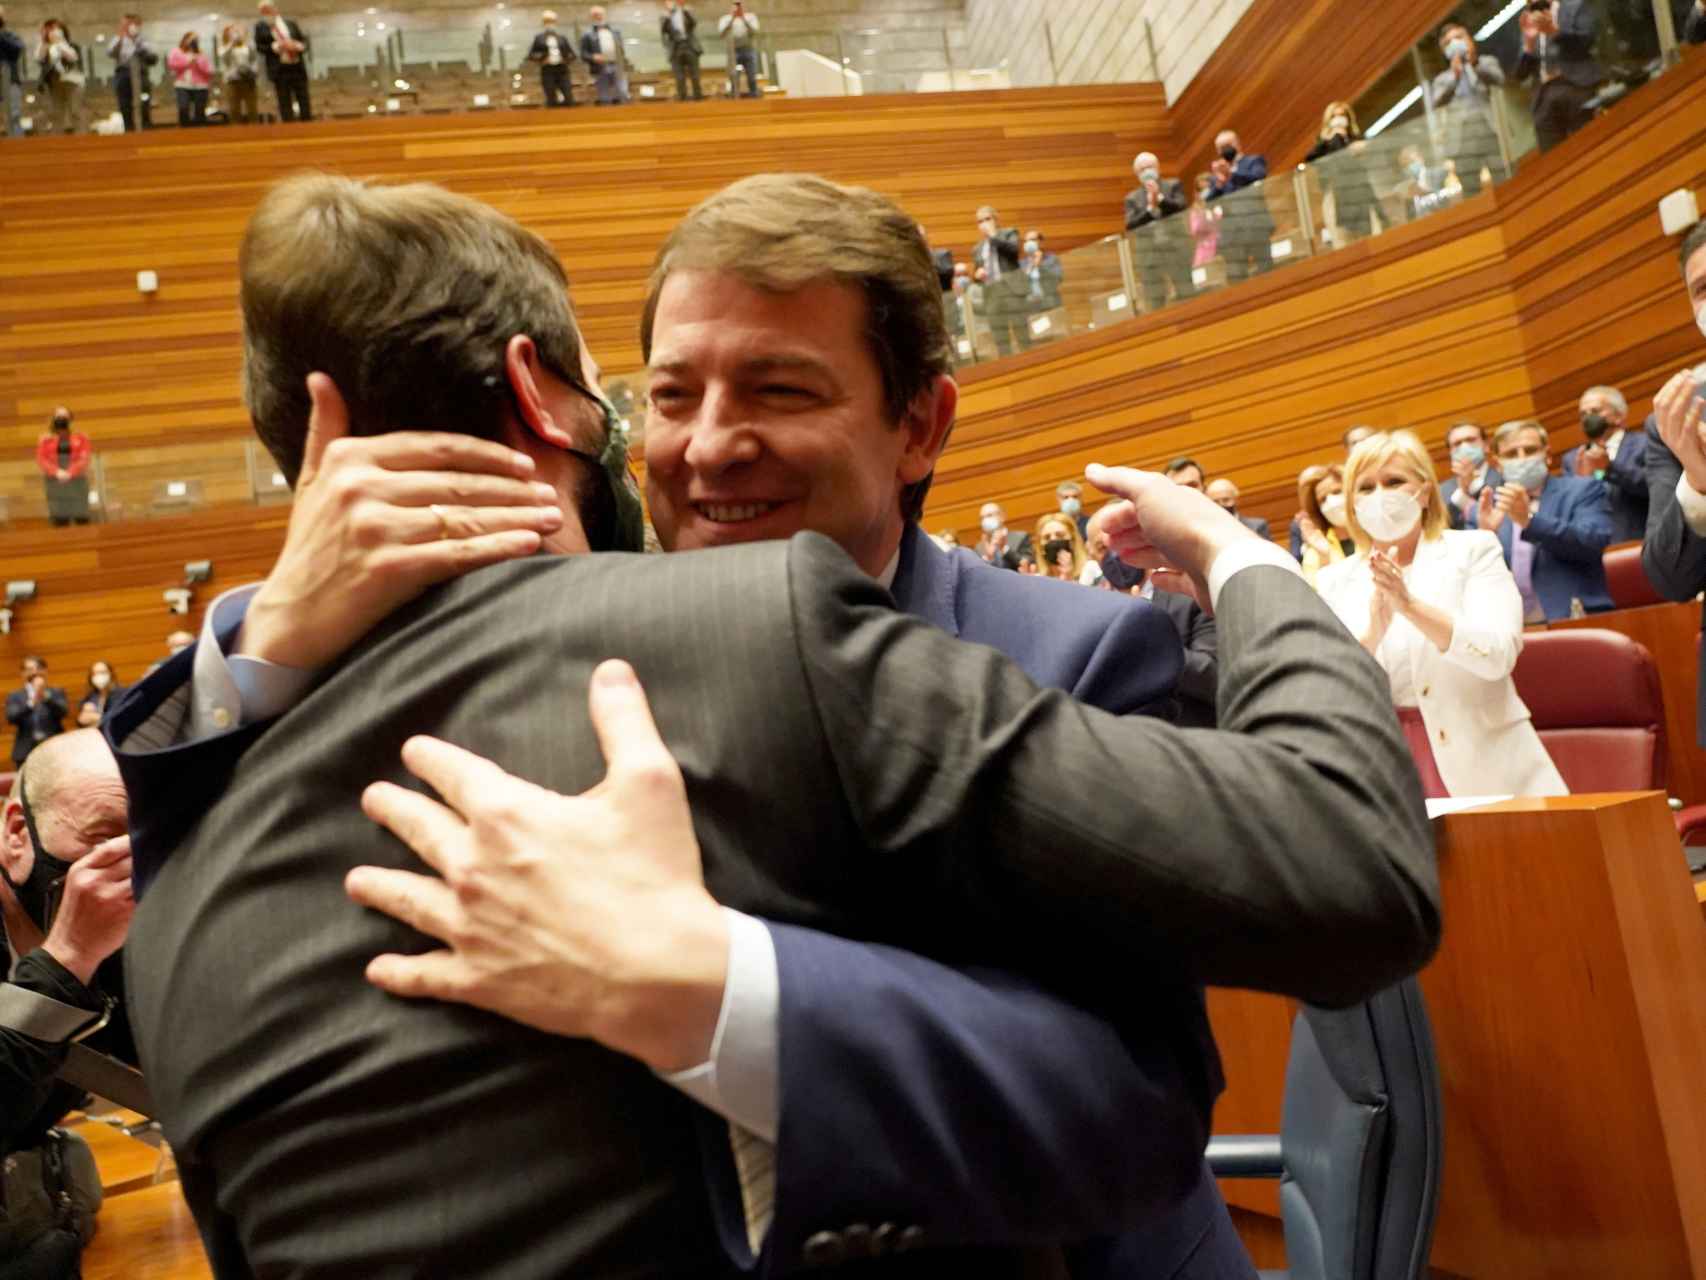 El presidente de la Junta, Alfonso Fernández Mañueco, y el vicepresidente, Juan García-Gallardo, se abrazan este lunes en las Cortes tras la investidura.